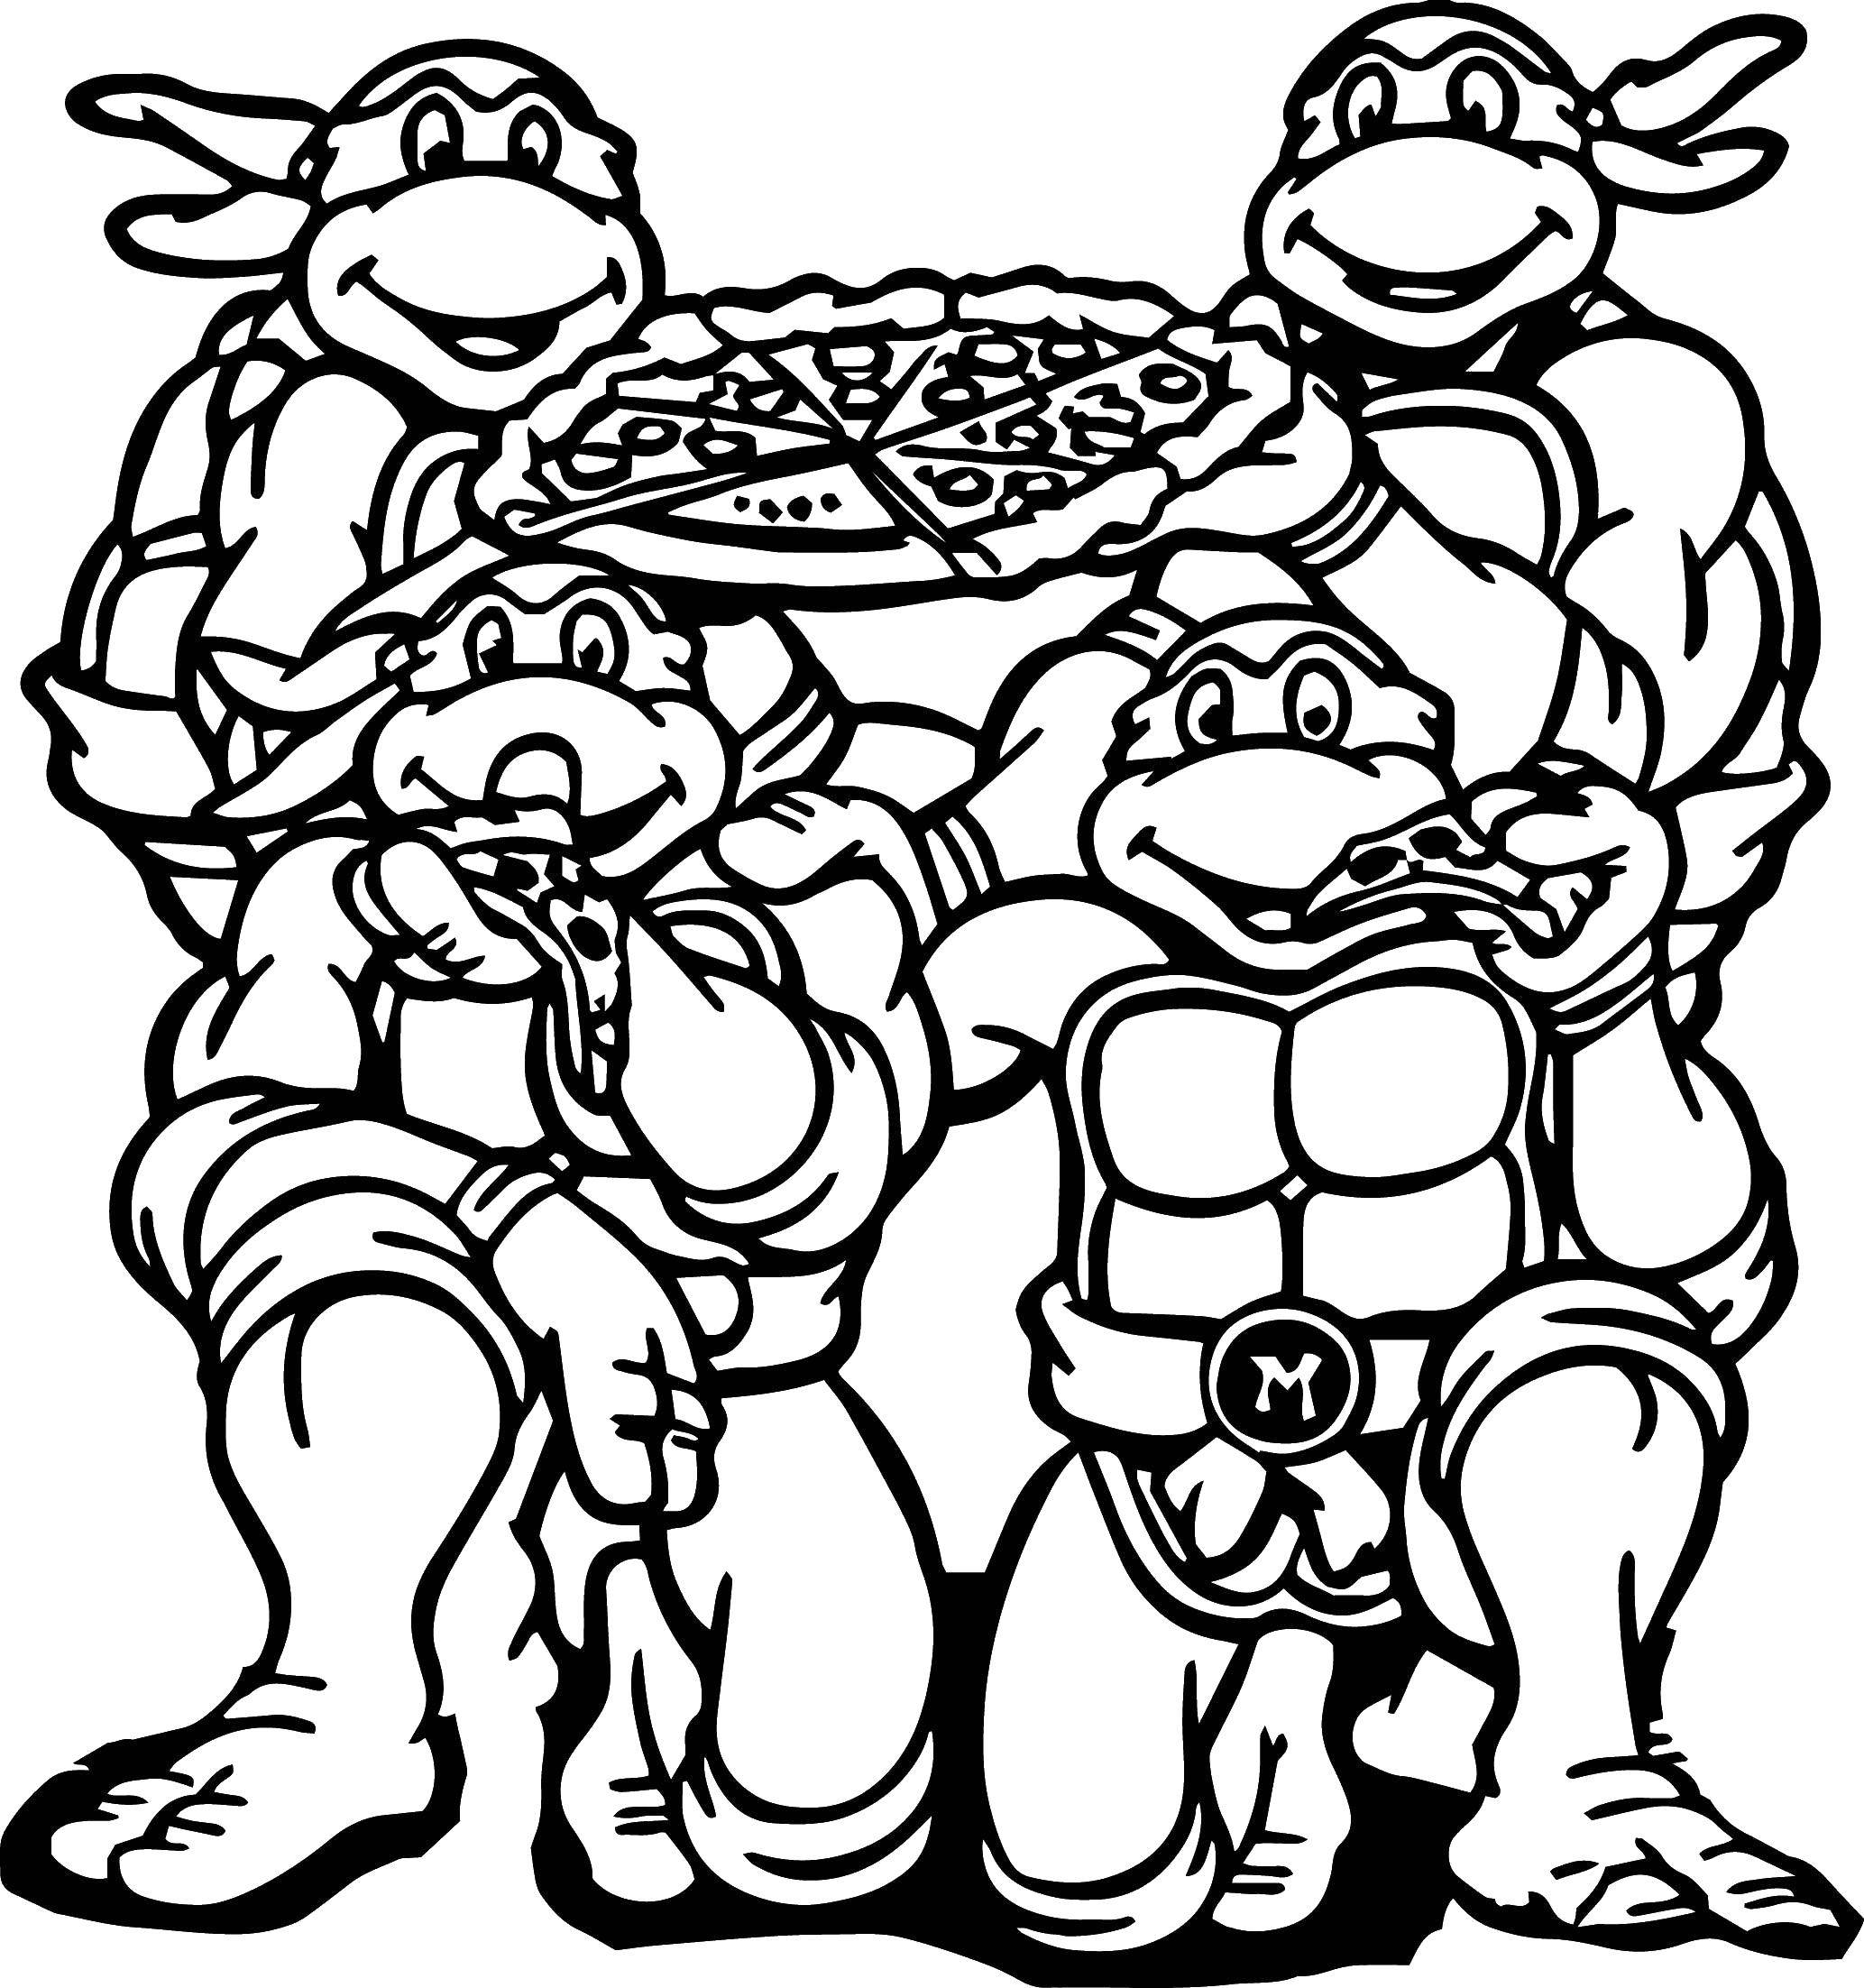 Название: Раскраска Черепашки ниндзя и пицца. Категория: ниндзя. Теги: черепаха, ниндзя, пицца.